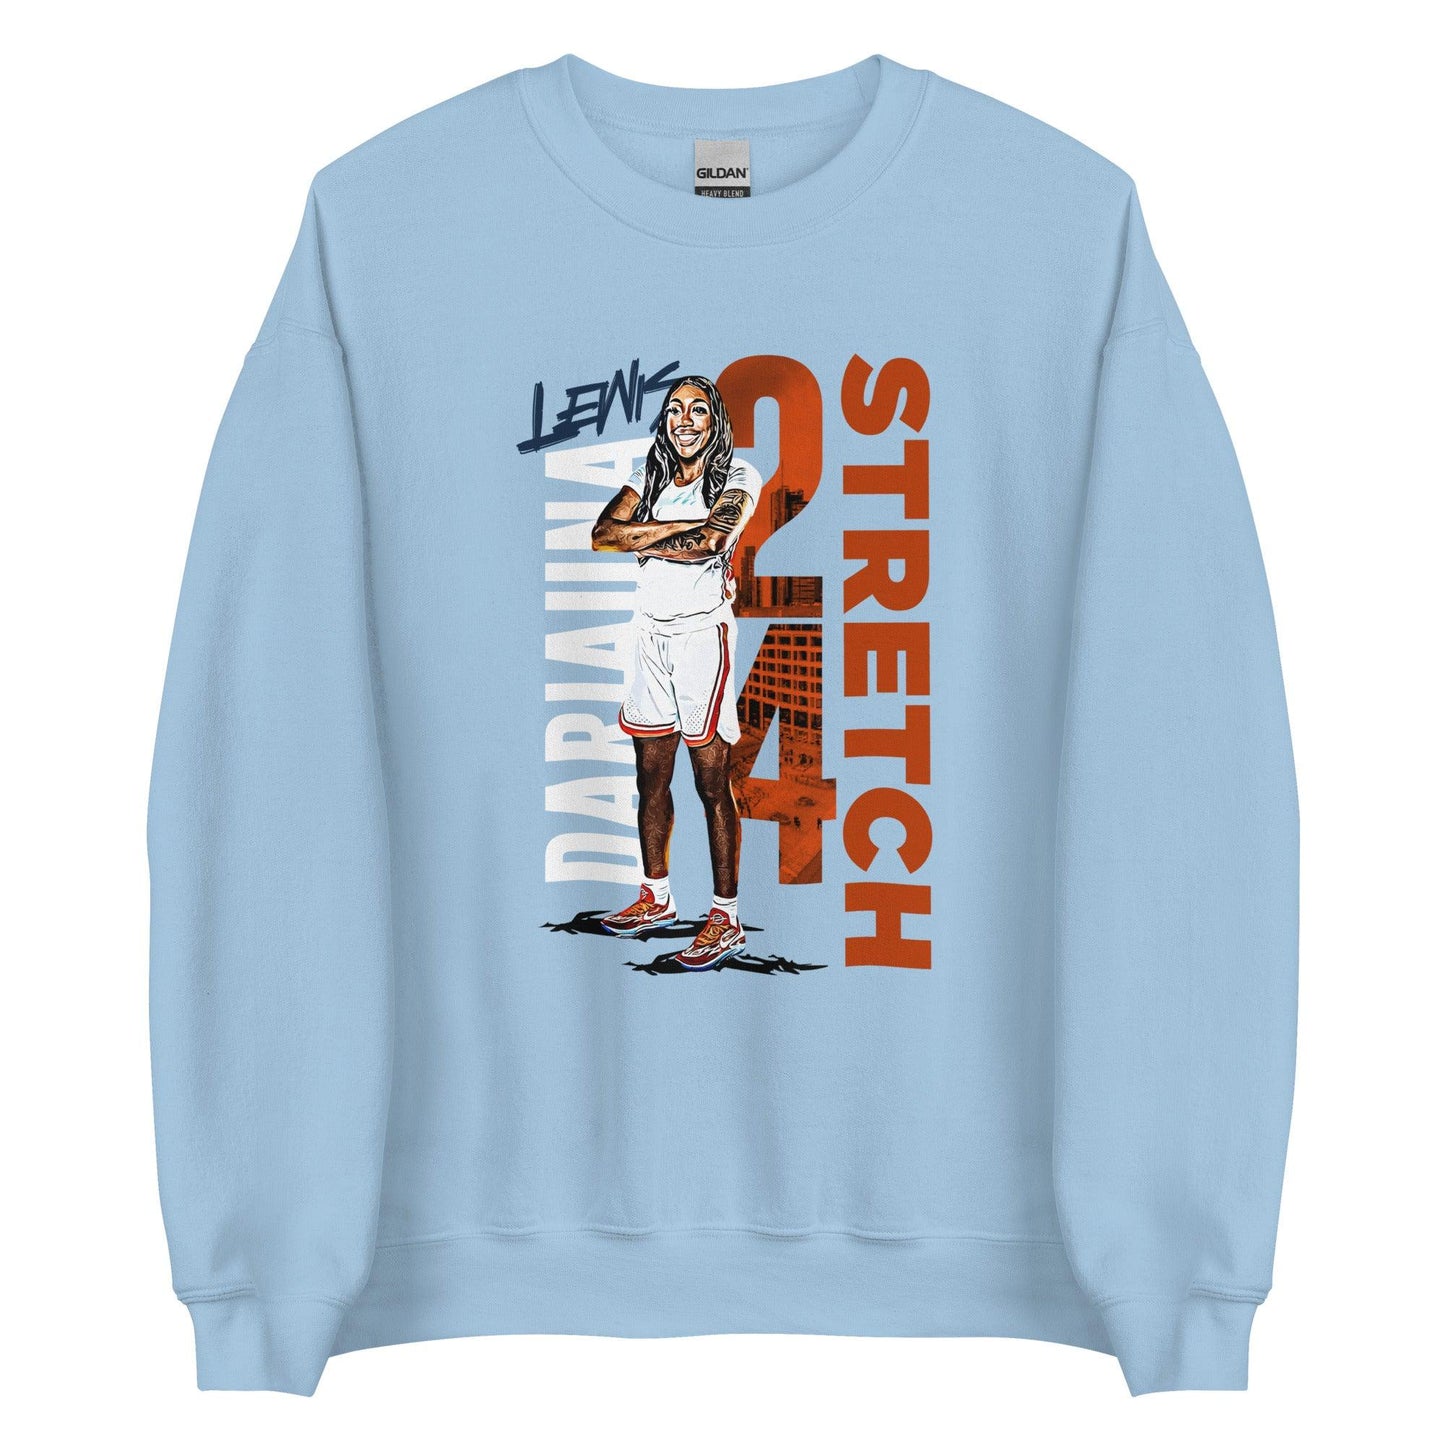 Dariauna Lewis "Stretch" Sweatshirt - Fan Arch